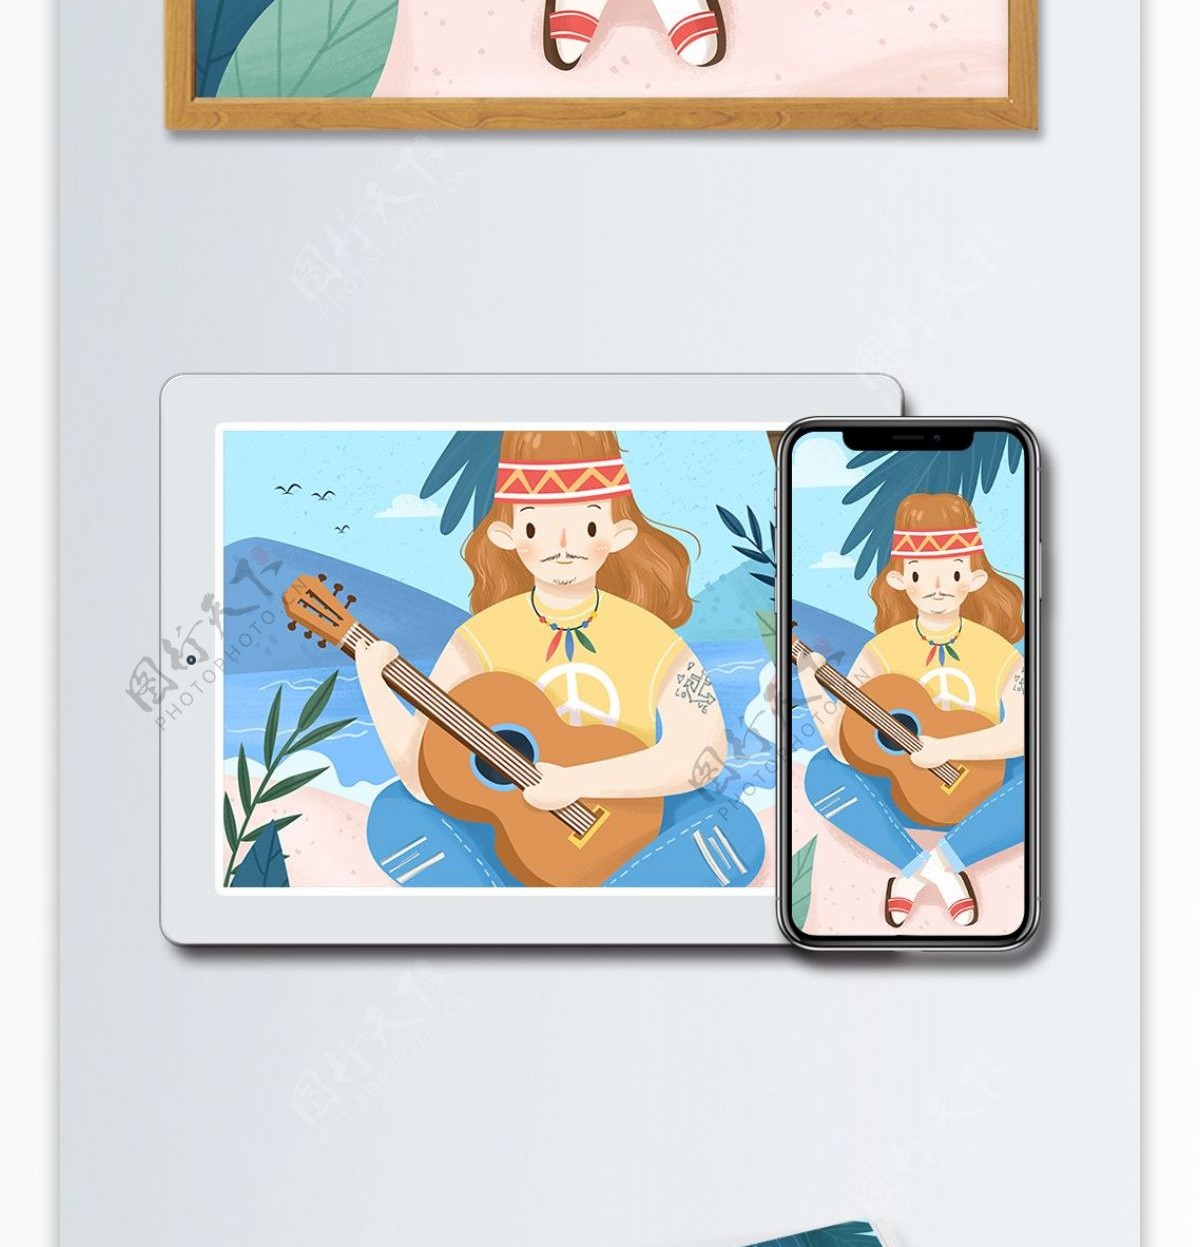 旅游旅行夏天吉他音乐海岛沙滩热带欢乐插画